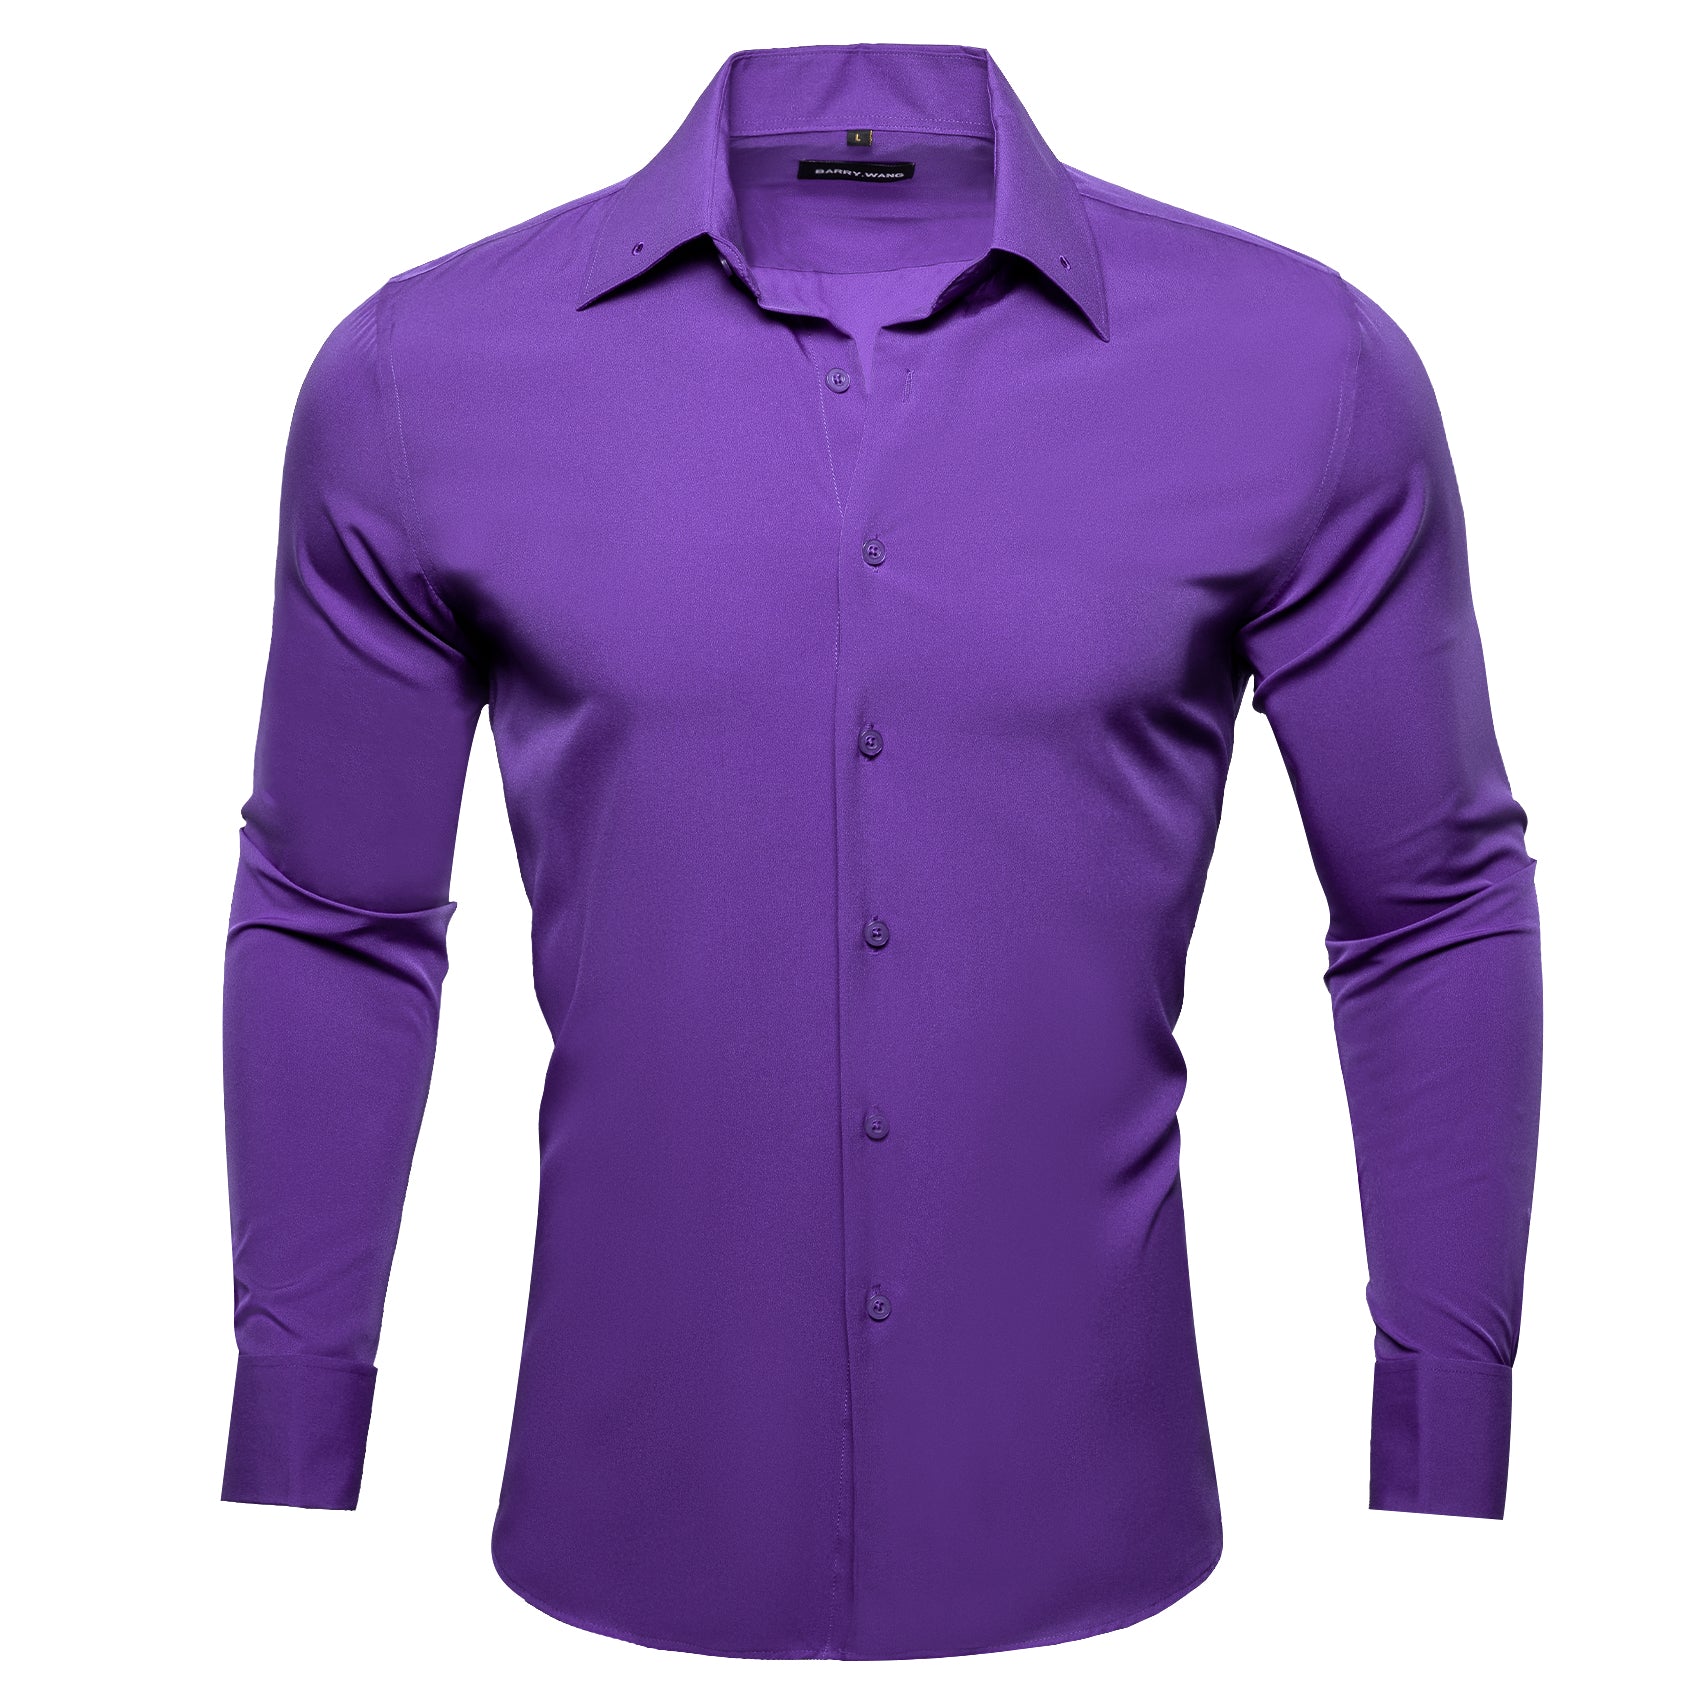 Barry.wang Blueviolet Solid Silk Shirt